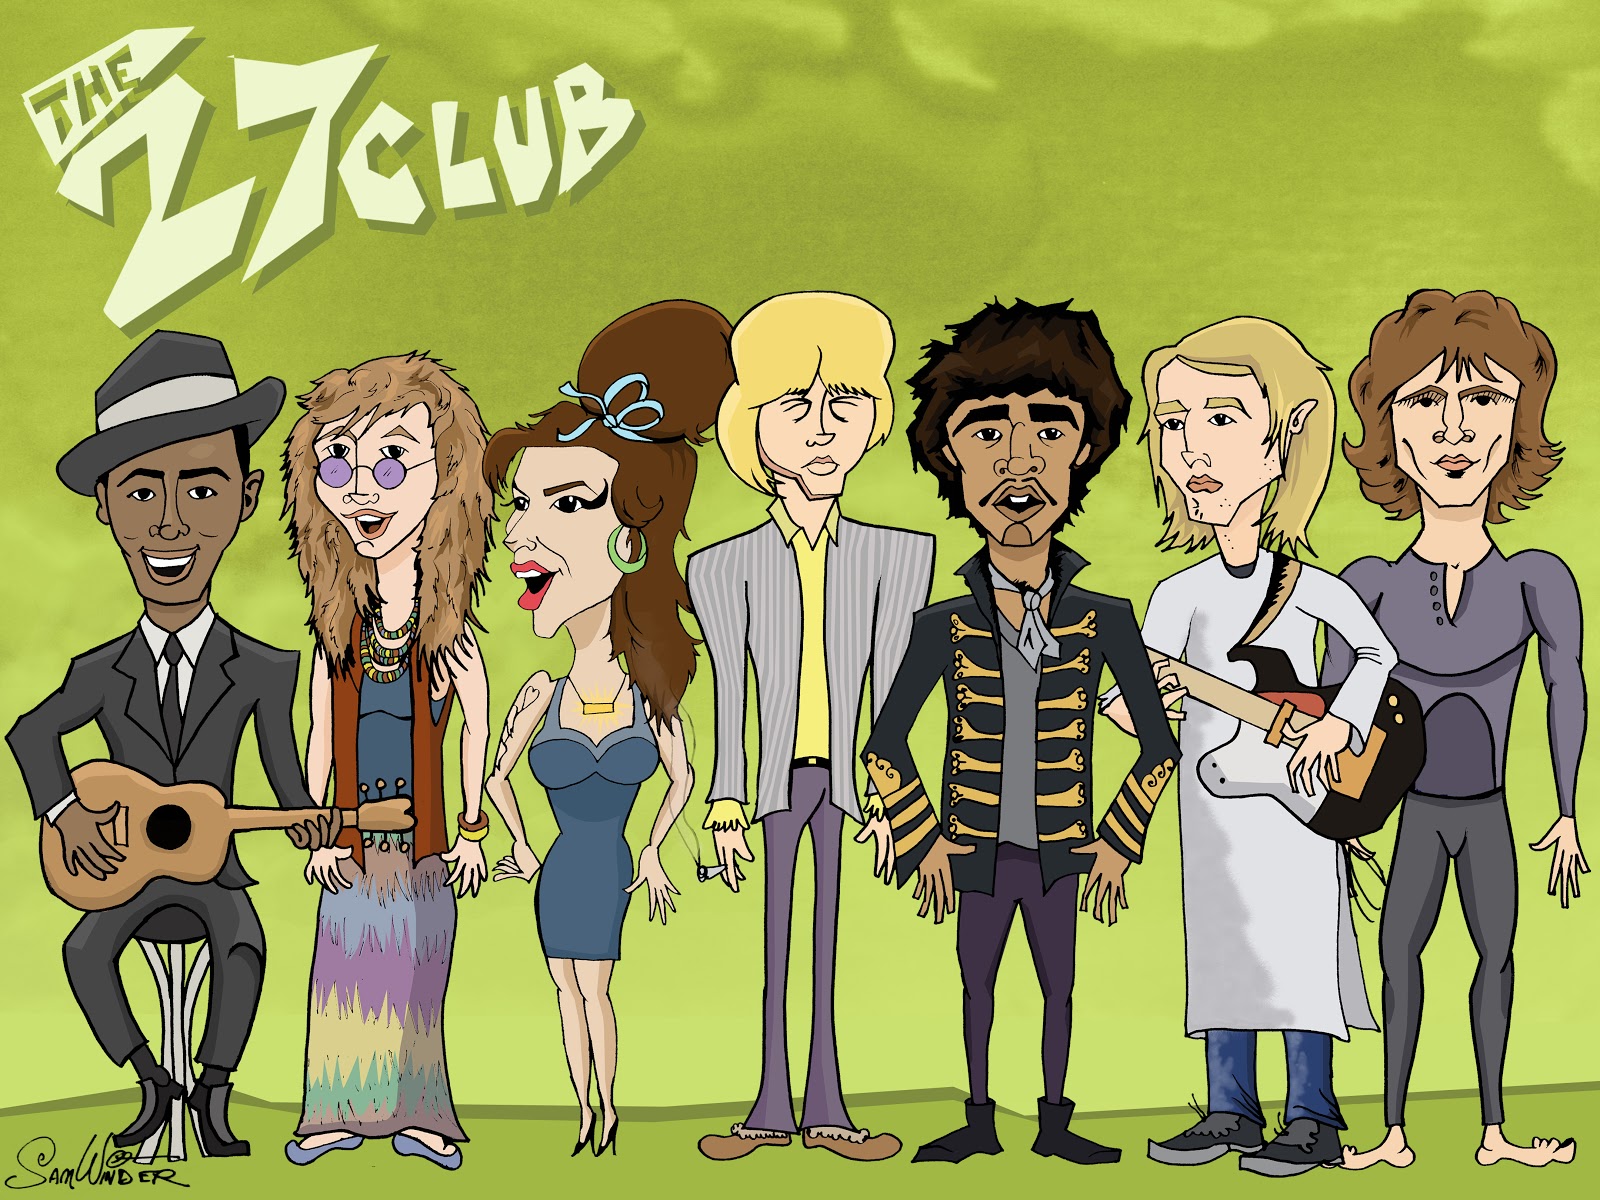 27th Club